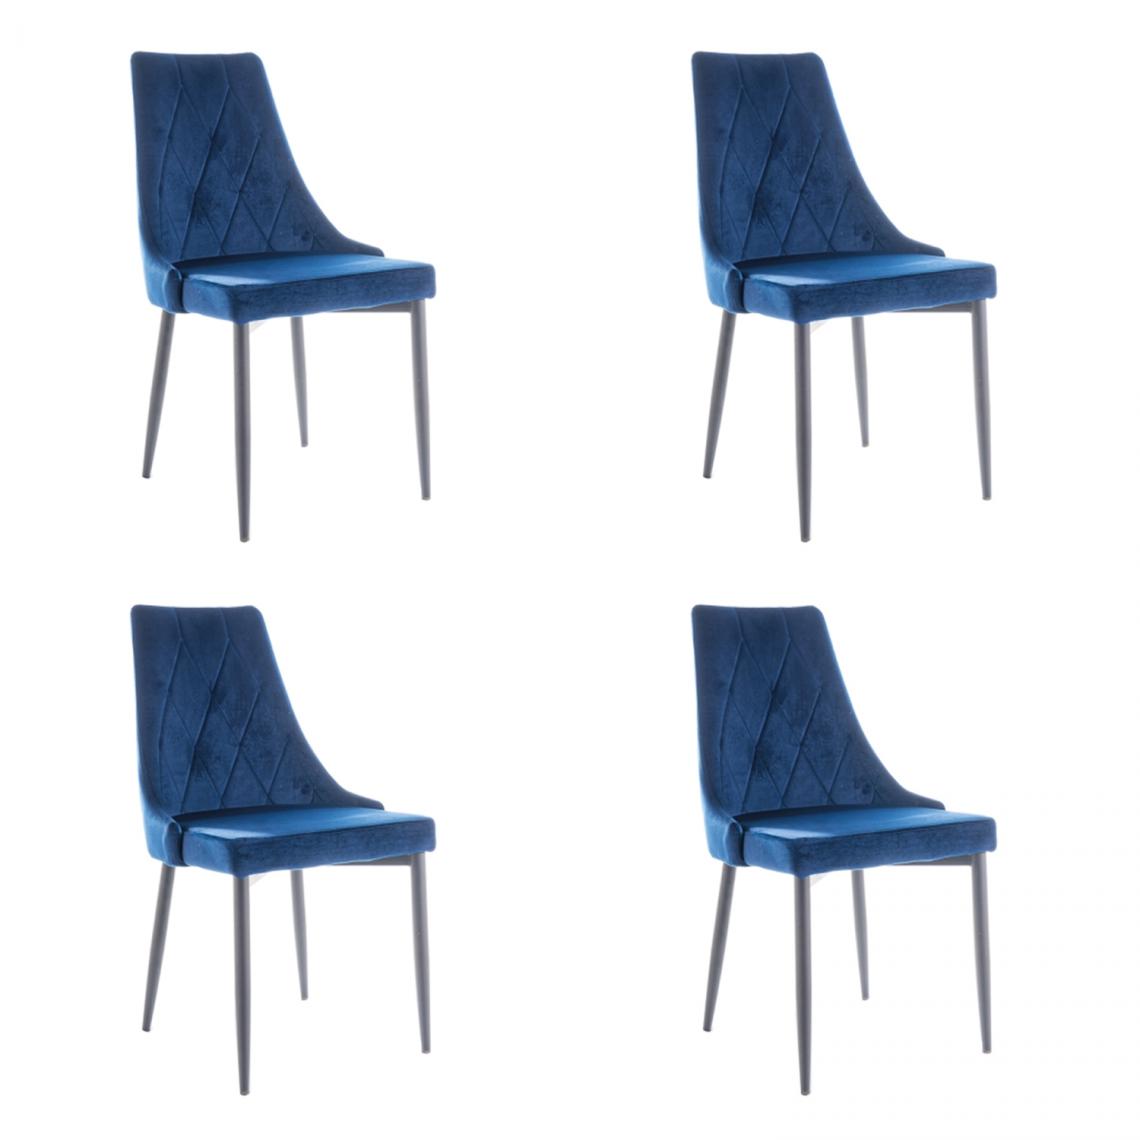 Hucoco - MELLEN - Lot de 4 chaises en tissu velouté - Style oriental - 88x46x46cm - Structure en métal - Bleu - Chaises